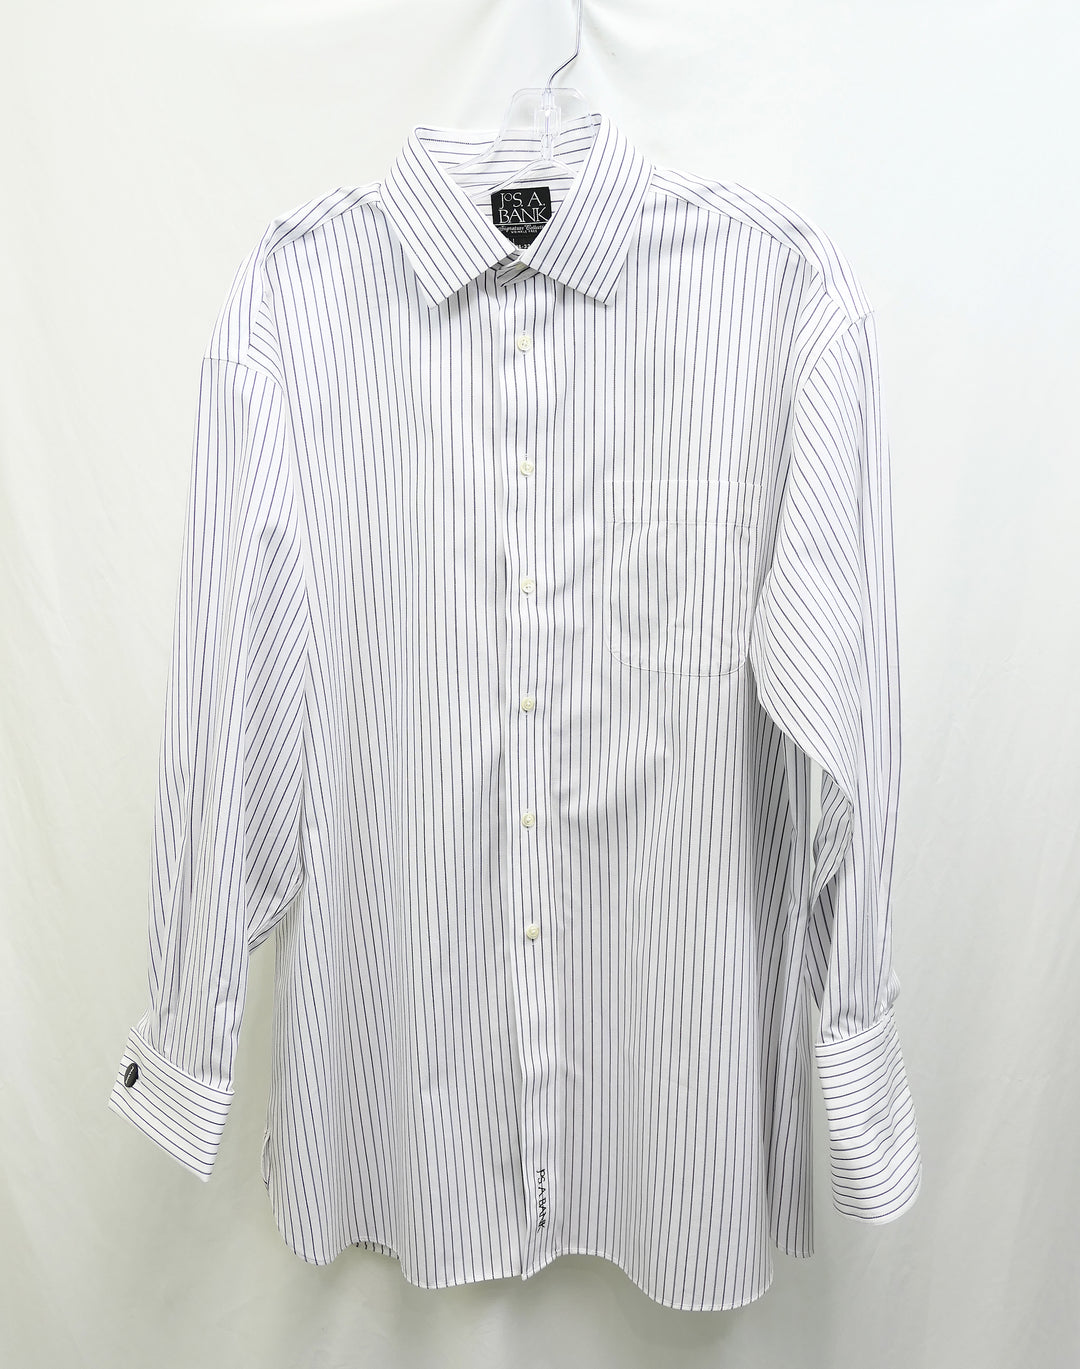 Jos A. Bank White Stripped Dress Shirt - Size 33x16